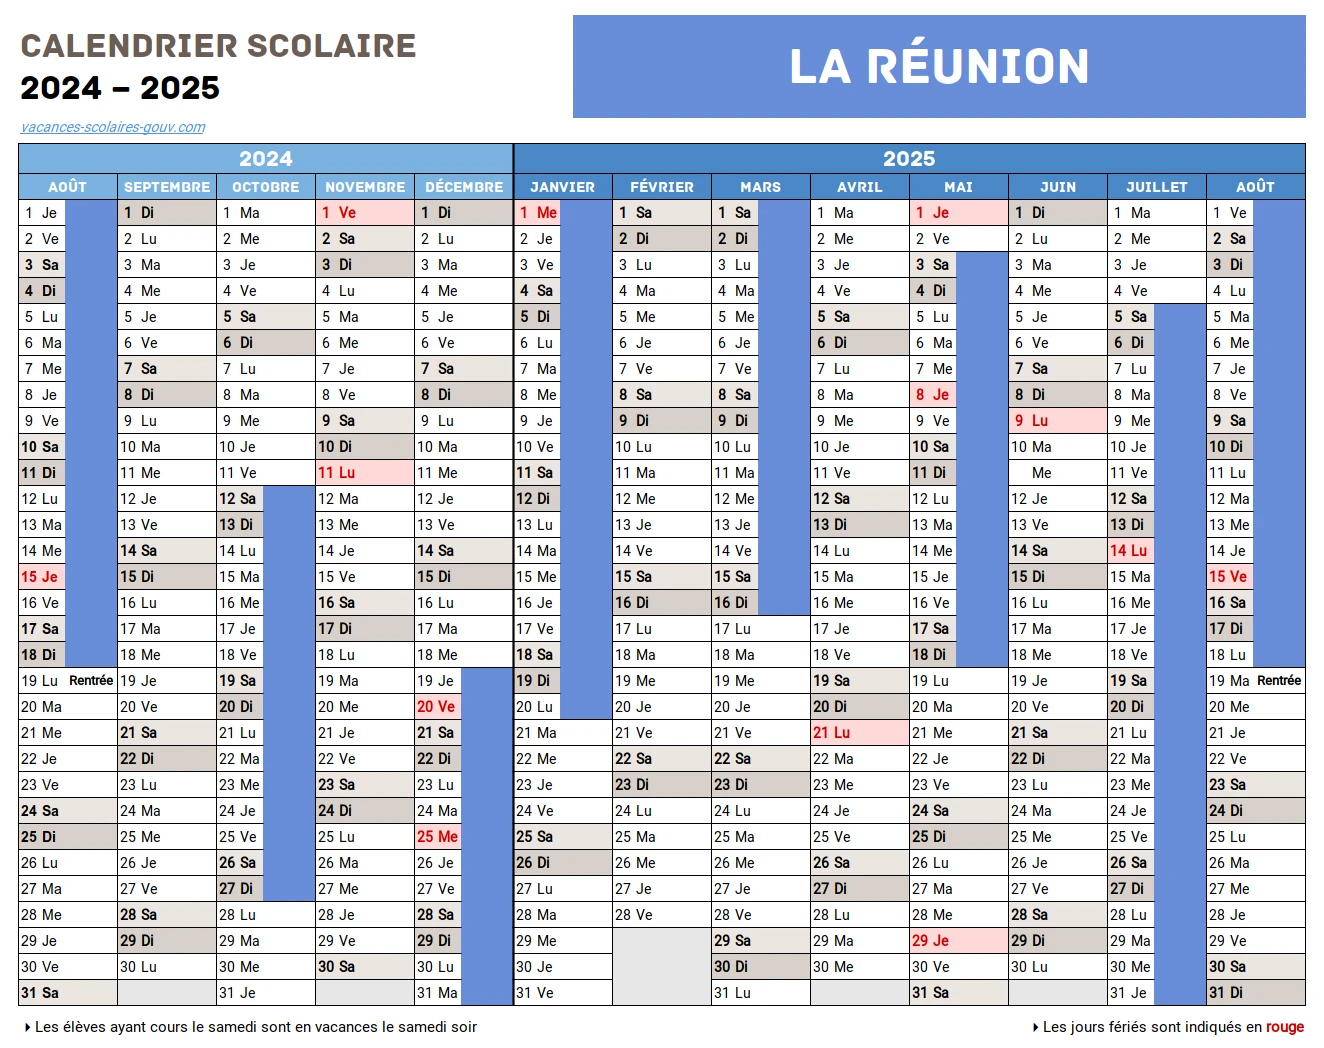 La RÉUNION • Calendrier Scolaire 2024-2025 Officiel + 2025 & 2026